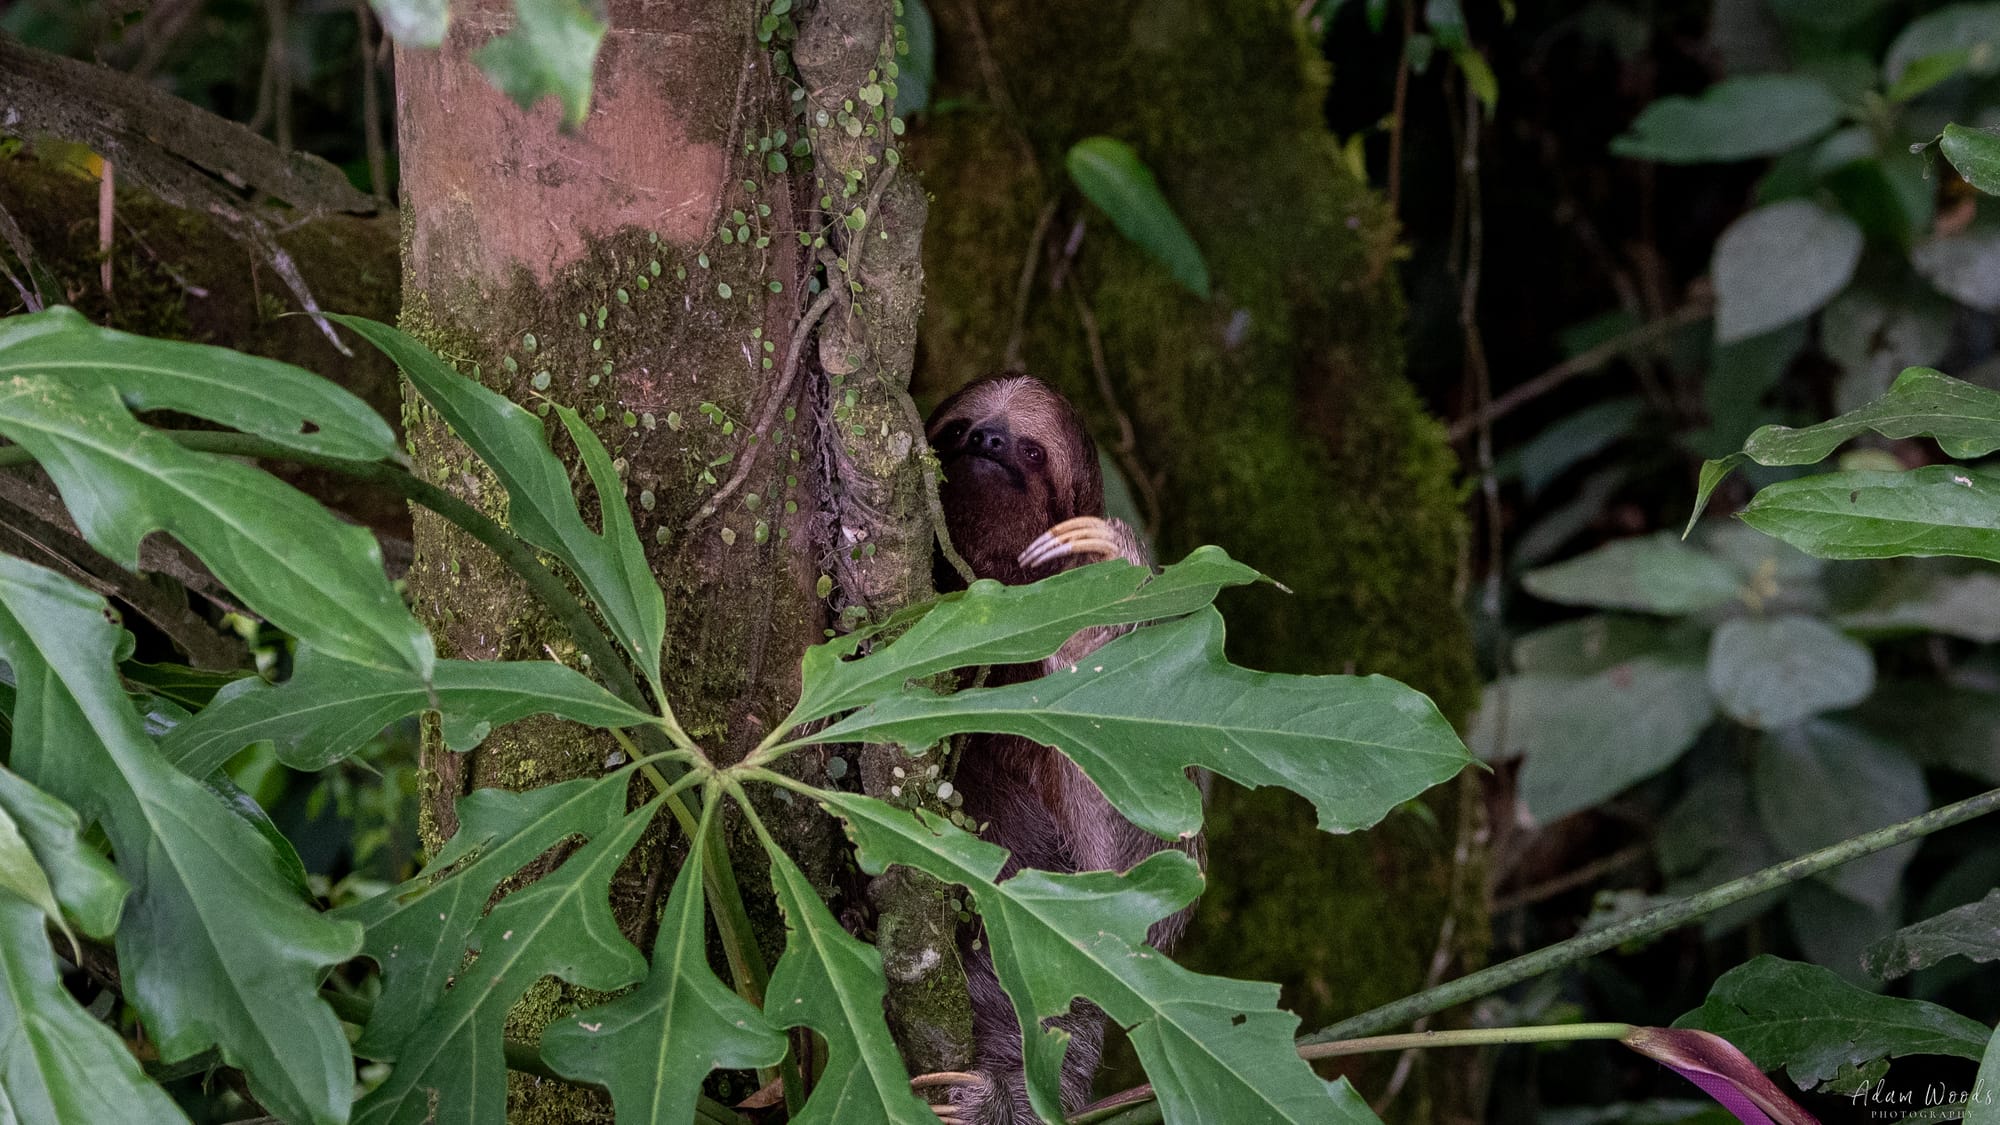 Sloth at Nayara Springs